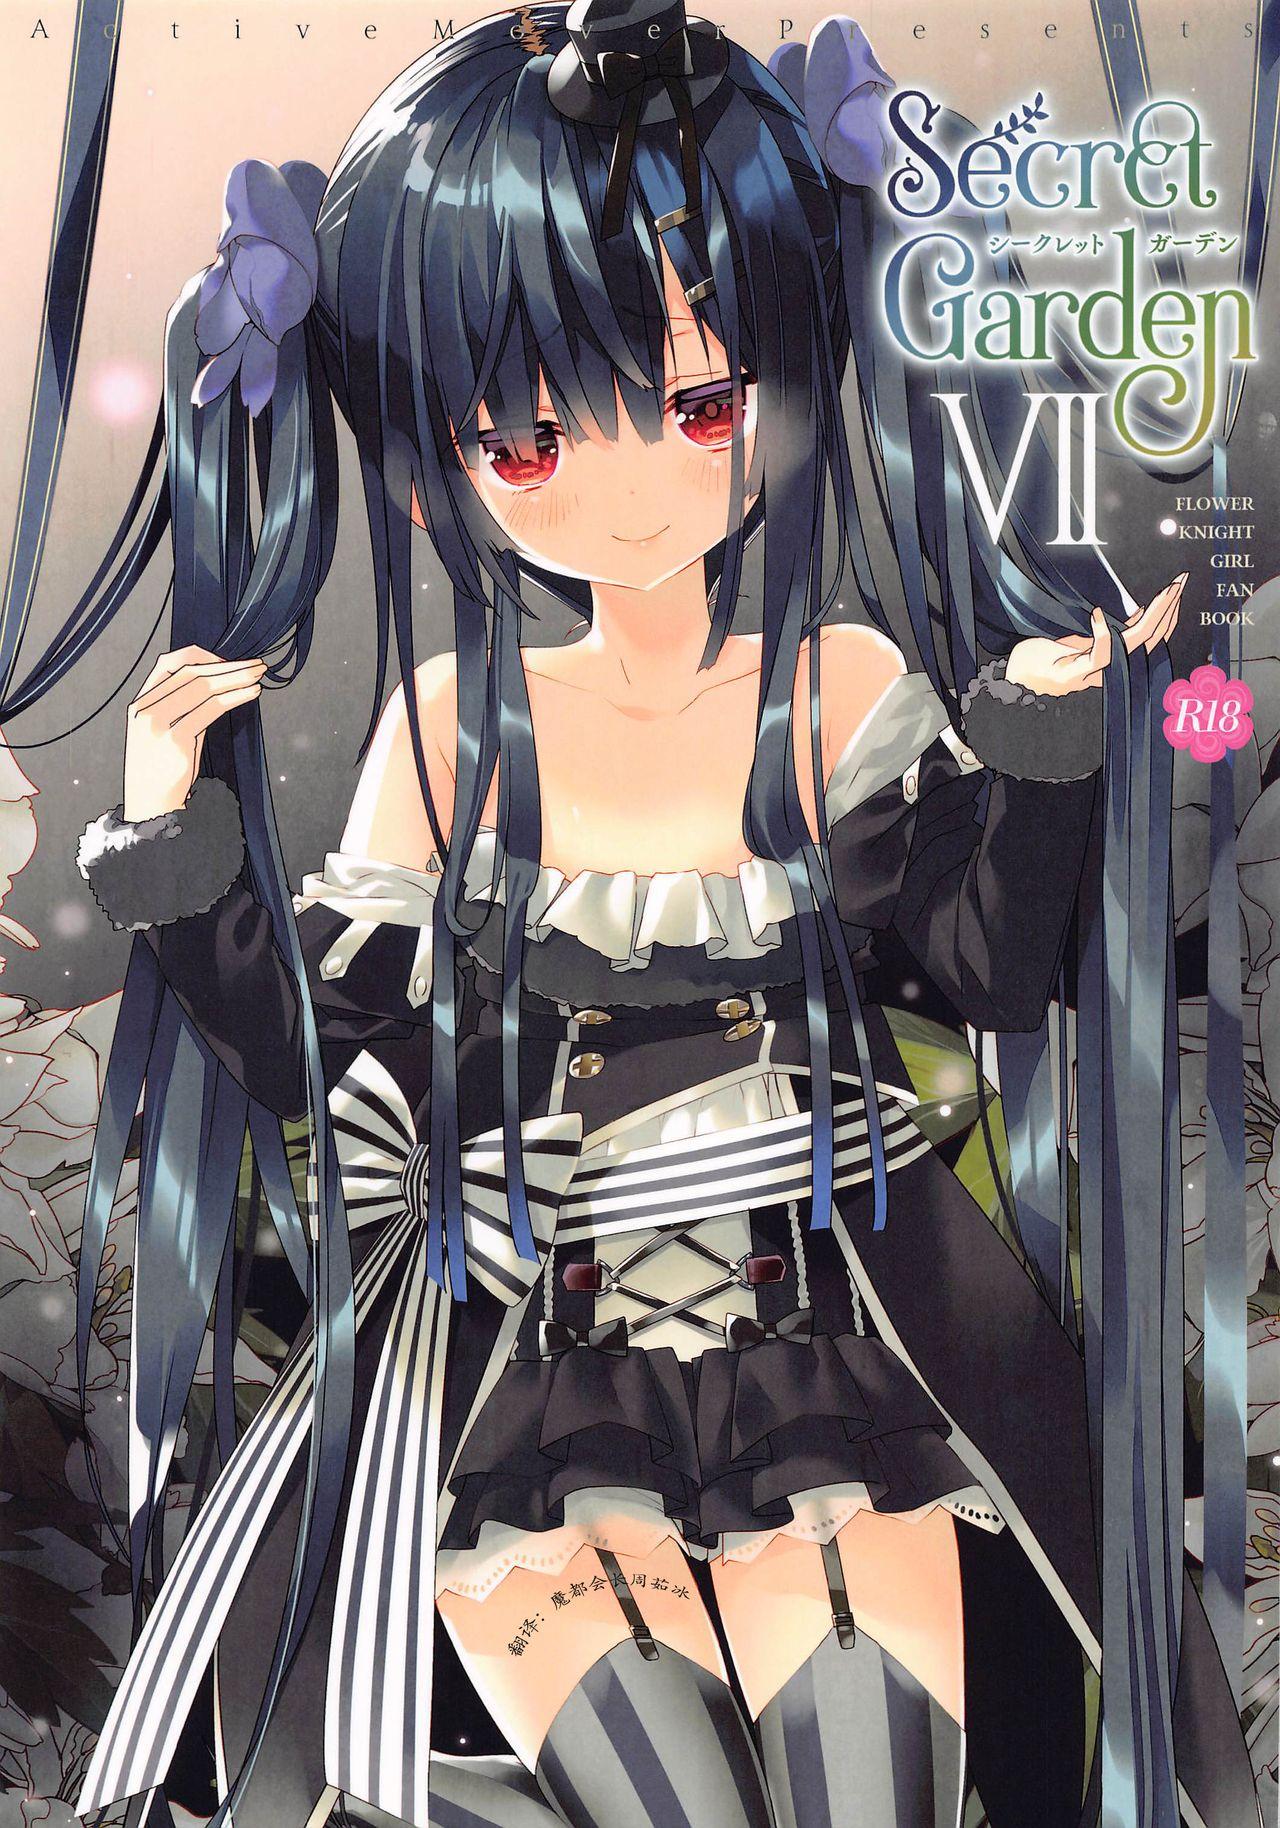 Insertion Secret Garden VII - Flower knight girl Longhair - Picture 1